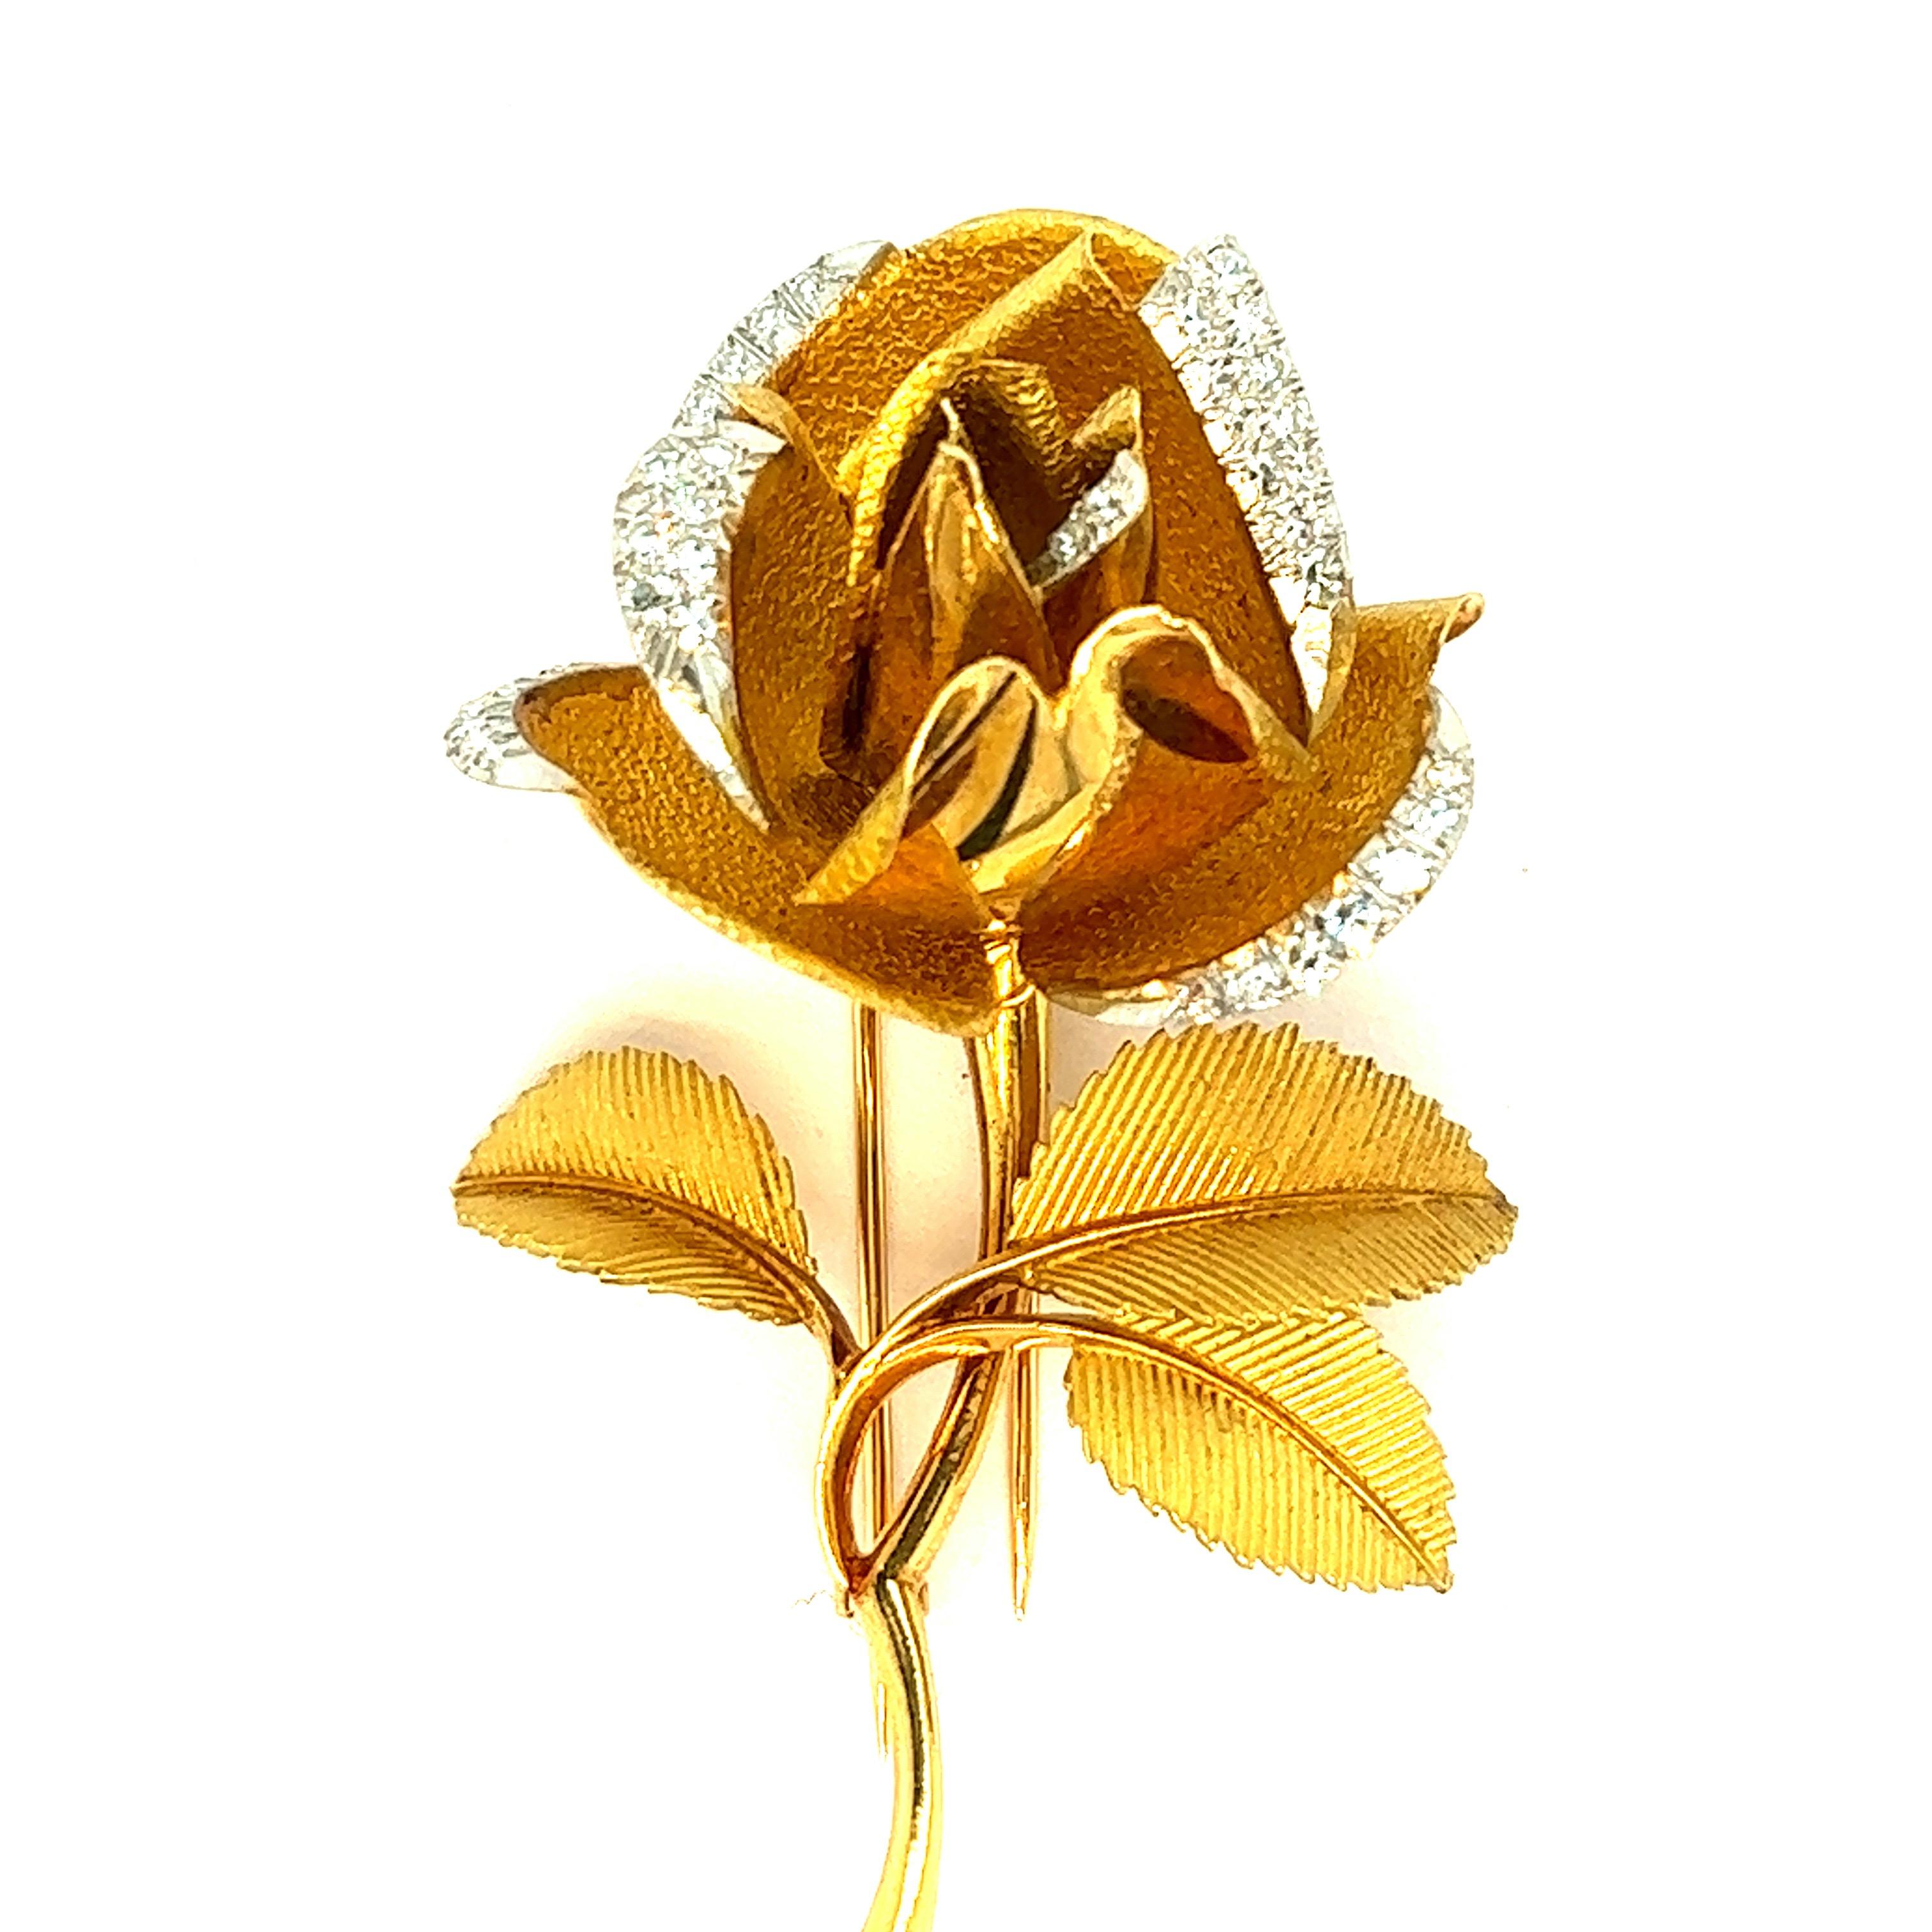 Broche rose française en or diamanté, vers les années 1970.

Très belle broche en diamants de taille ronde, or jaune 18 carats, avec un motif de fleur de rose ; marquée Made in France, OR 18 cts.

Taille : largeur 1.56 pouces, longueur 2.56